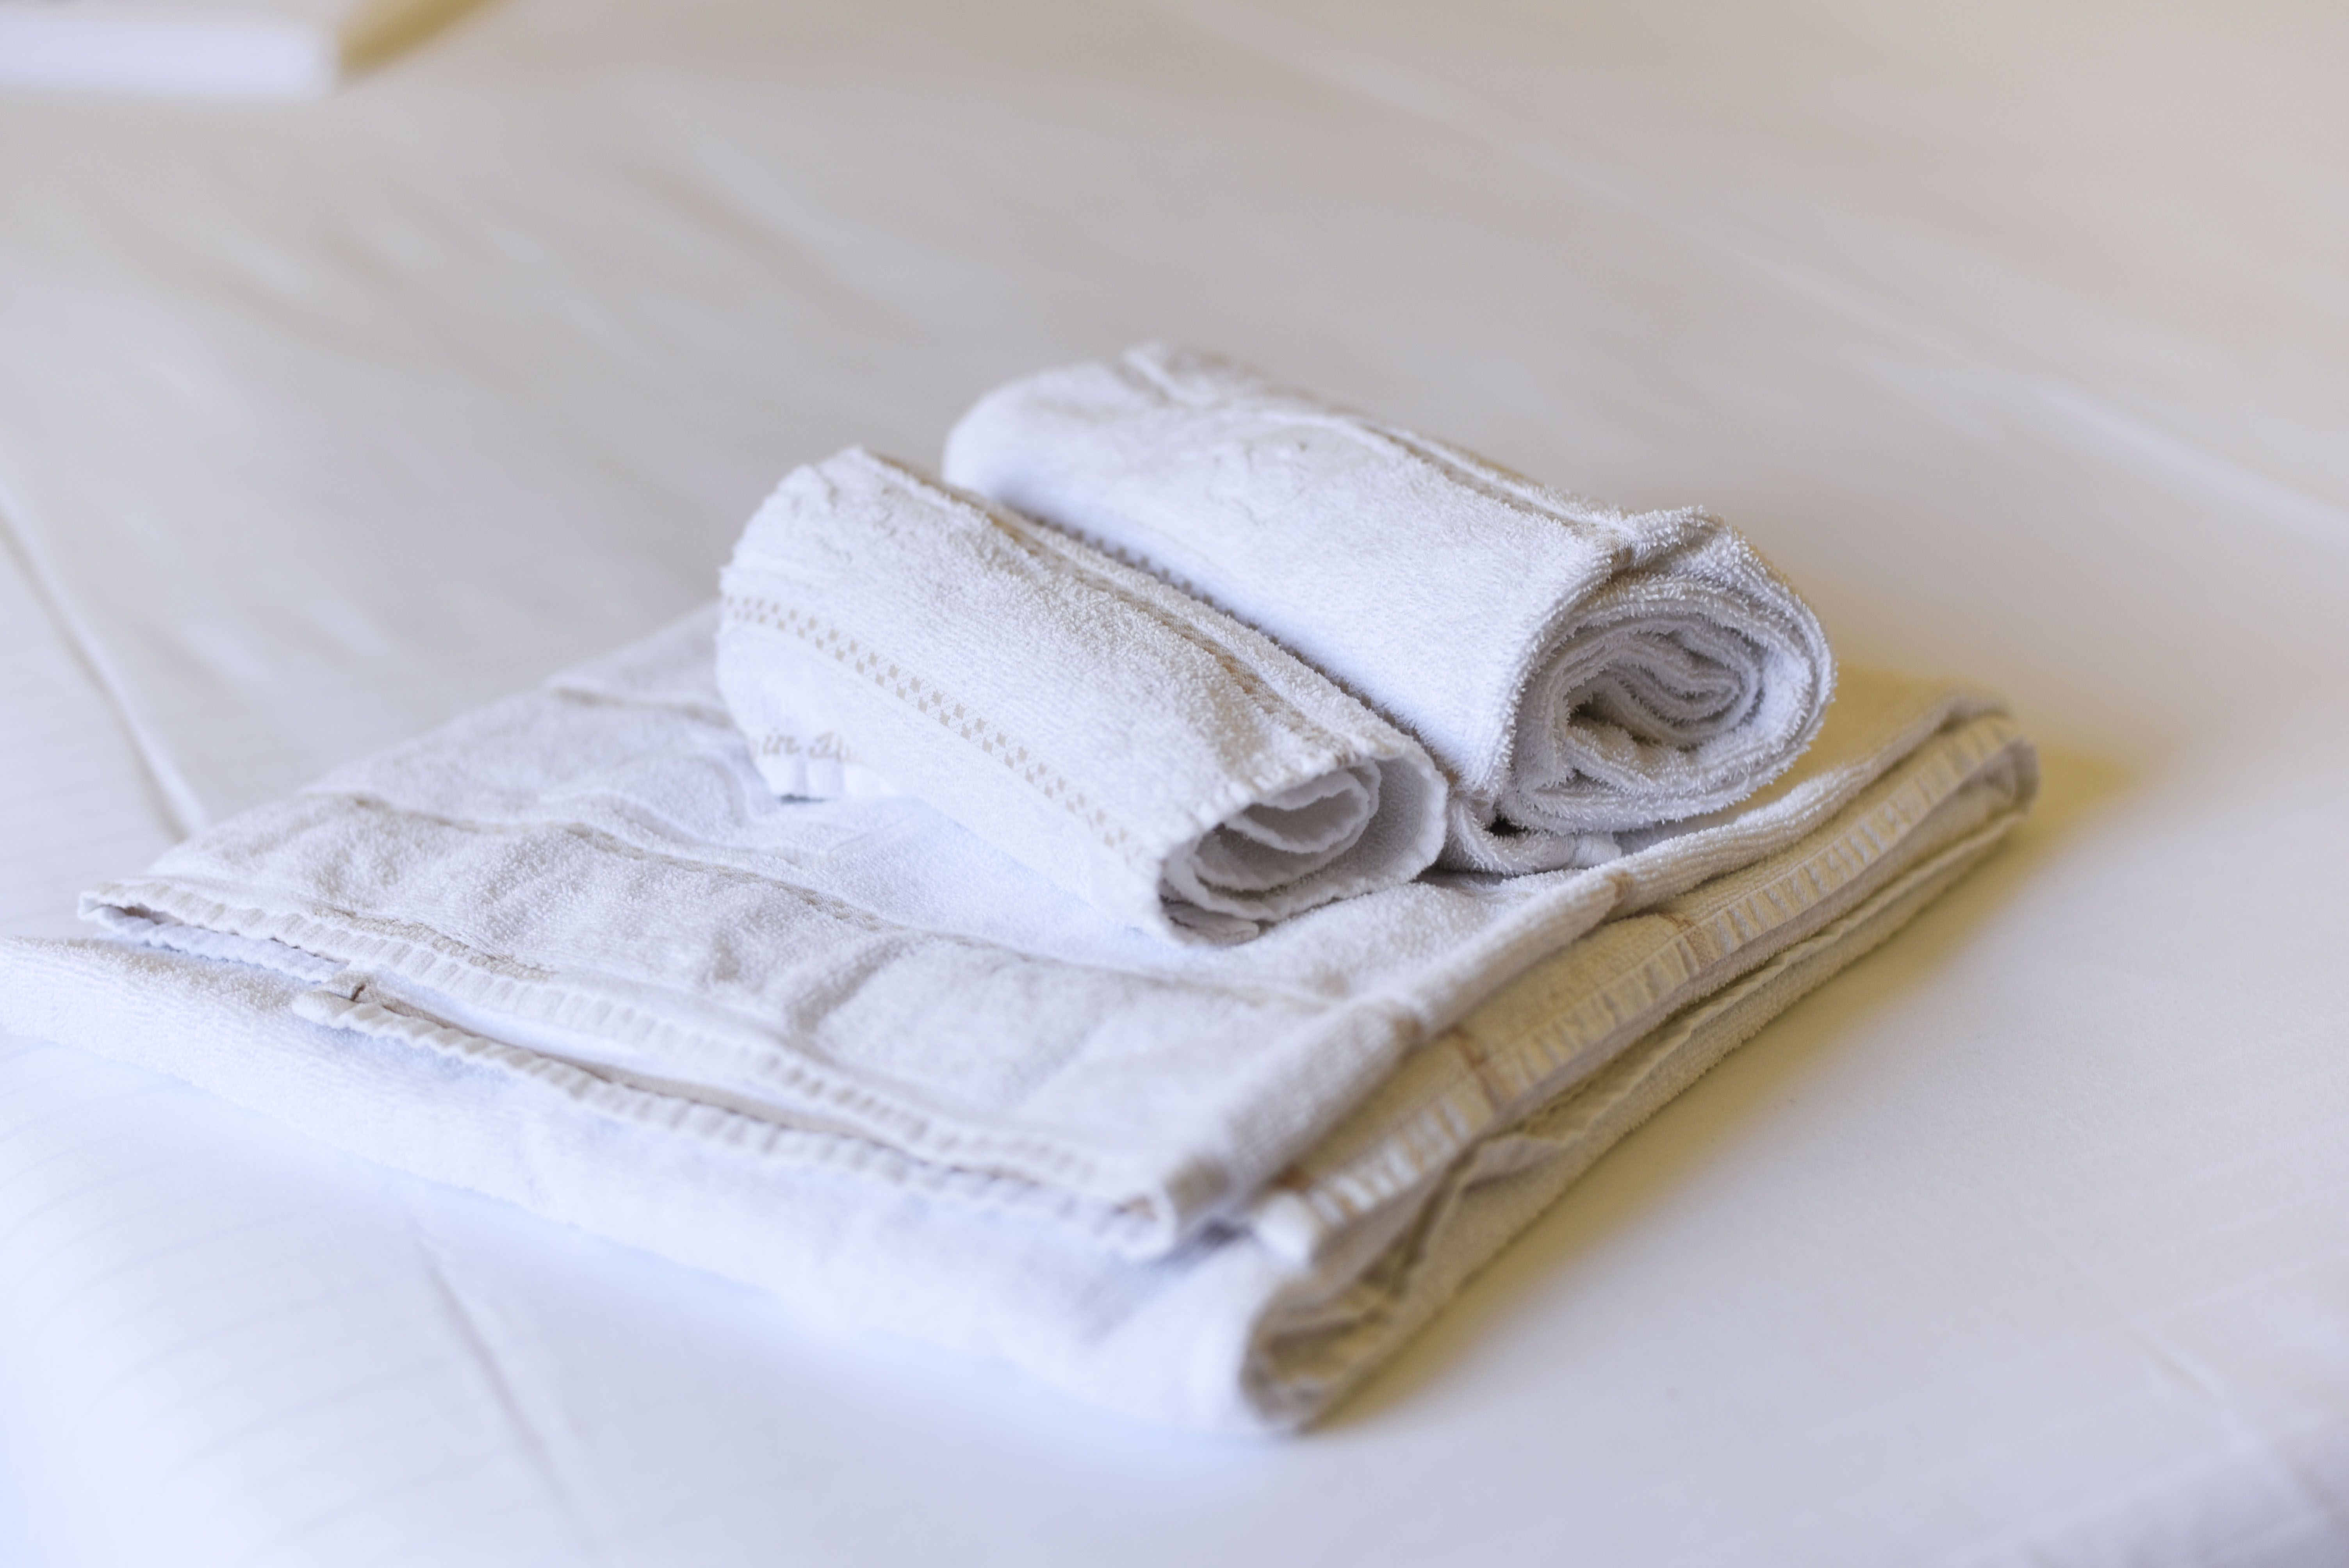 dettaglio asciugamani sul letto